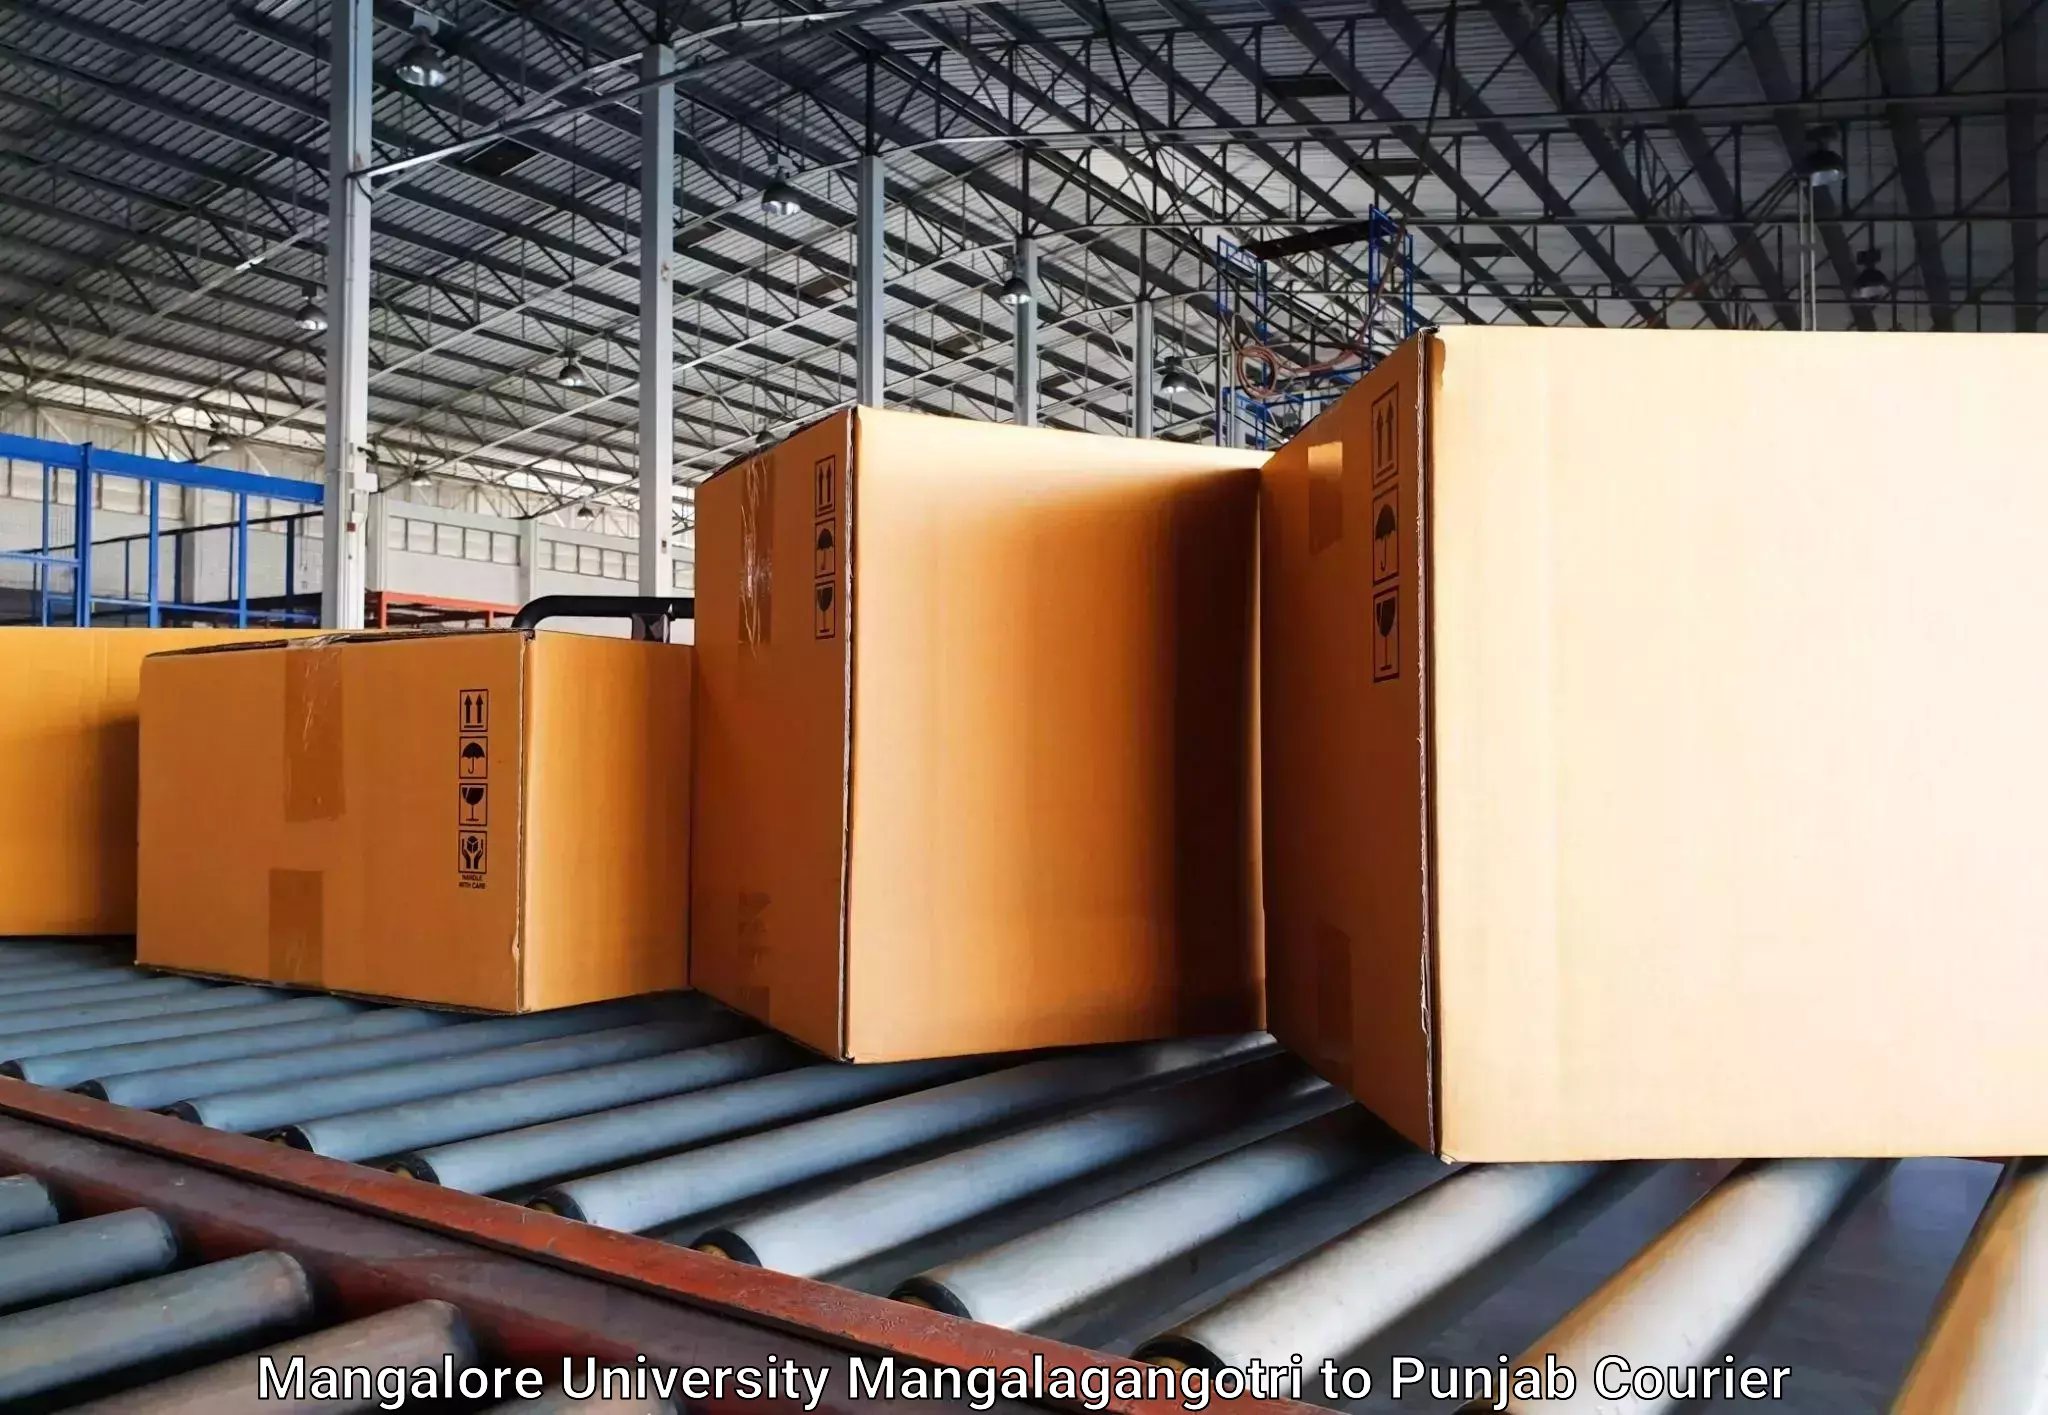 Luggage delivery network Mangalore University Mangalagangotri to Nawanshahr